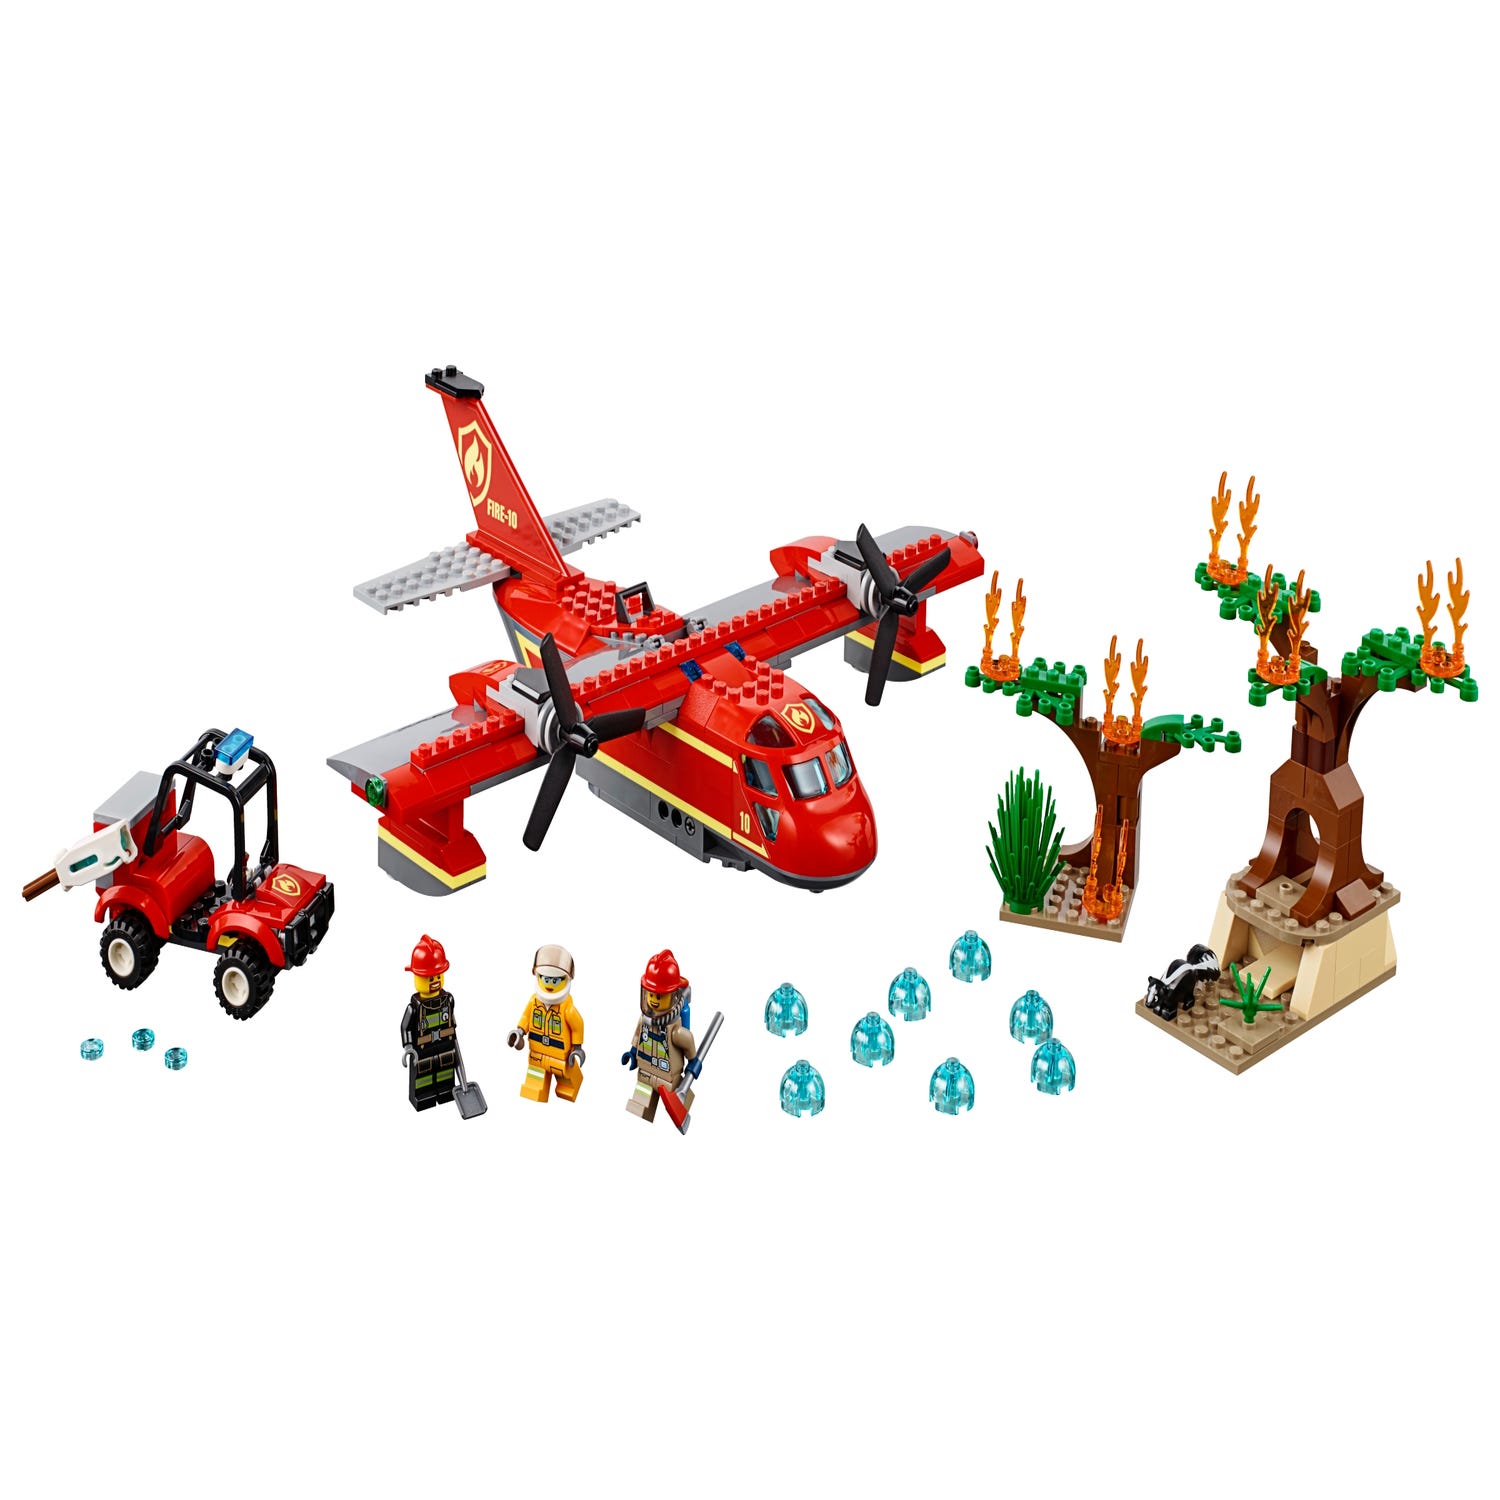 Børnecenter kranium Blinke Fire Plane 60217 | City | Buy online at the Official LEGO® Shop US